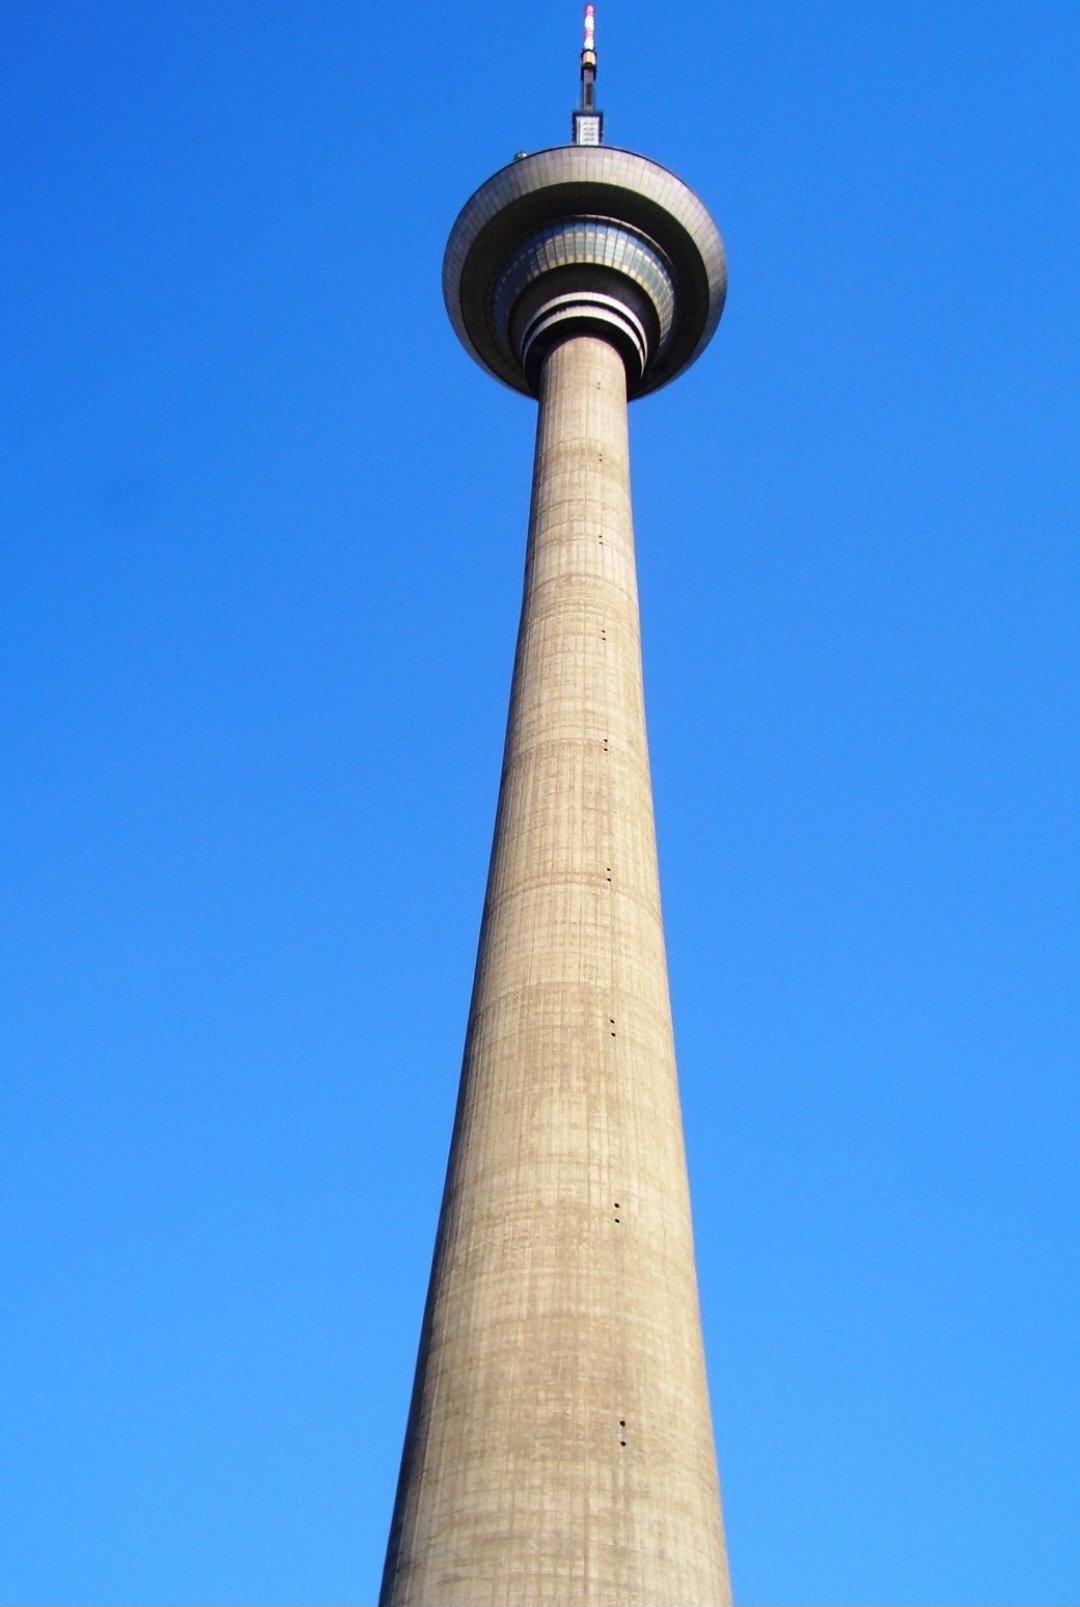 Tianjin Radio e TV Tower - 415 metros - China - Funciona desde 1991. Com vista panorâmica, ela oferece aos turistas uma bela contemplação do horizonte. Além de servir como torre de comunicação, ela conta com restaurantes e lojas de conveniência. Reprodução: Flipar